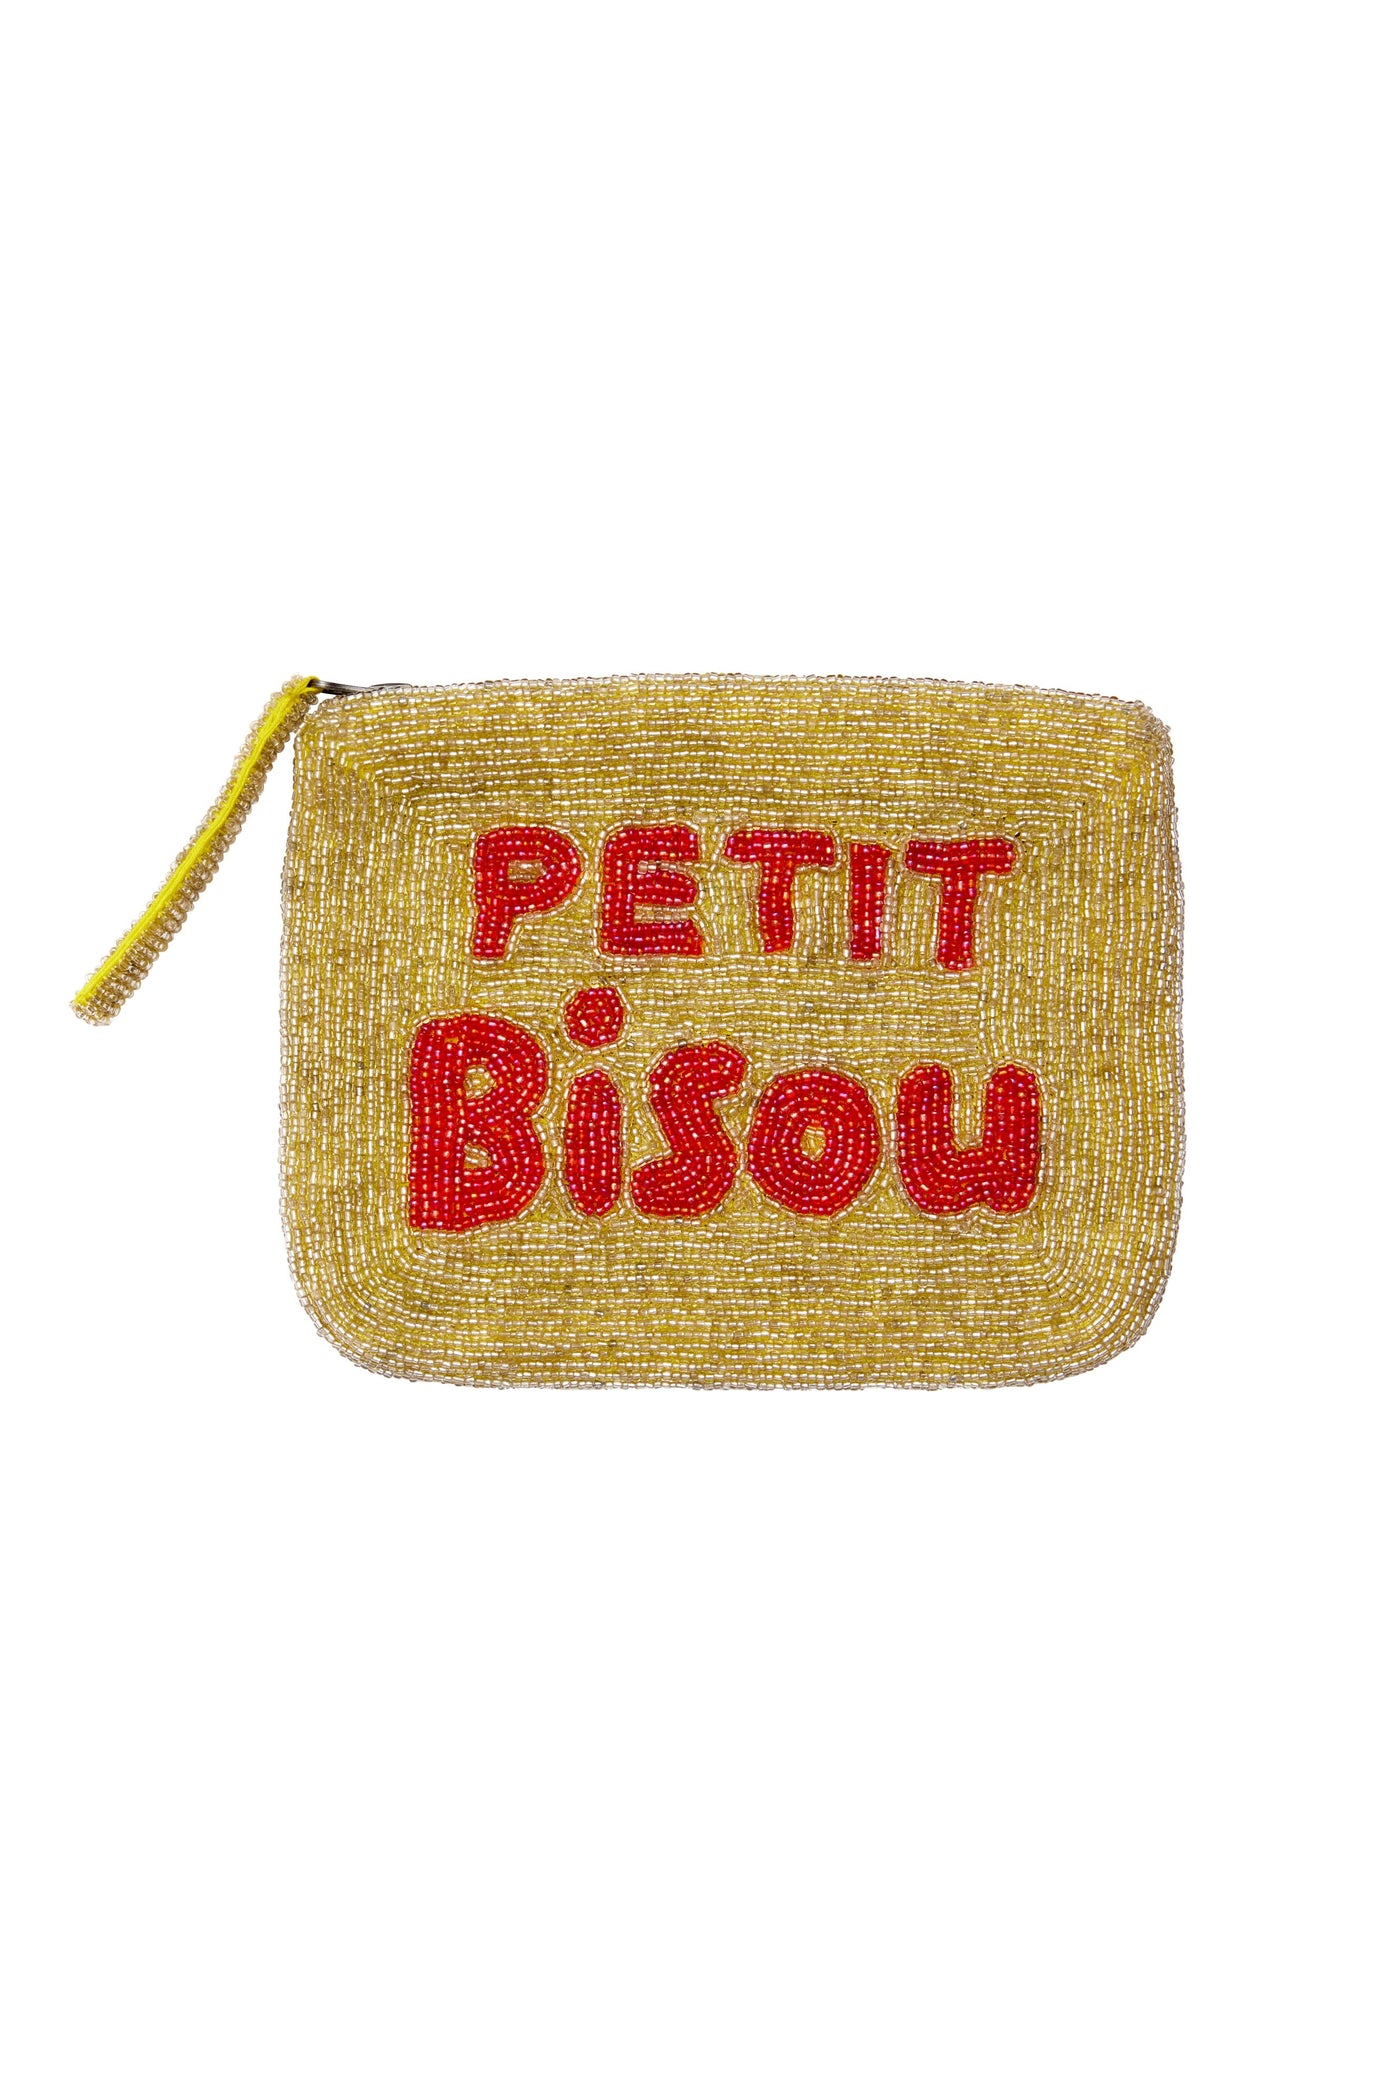 Petit Bisou mini clutch- gold and red